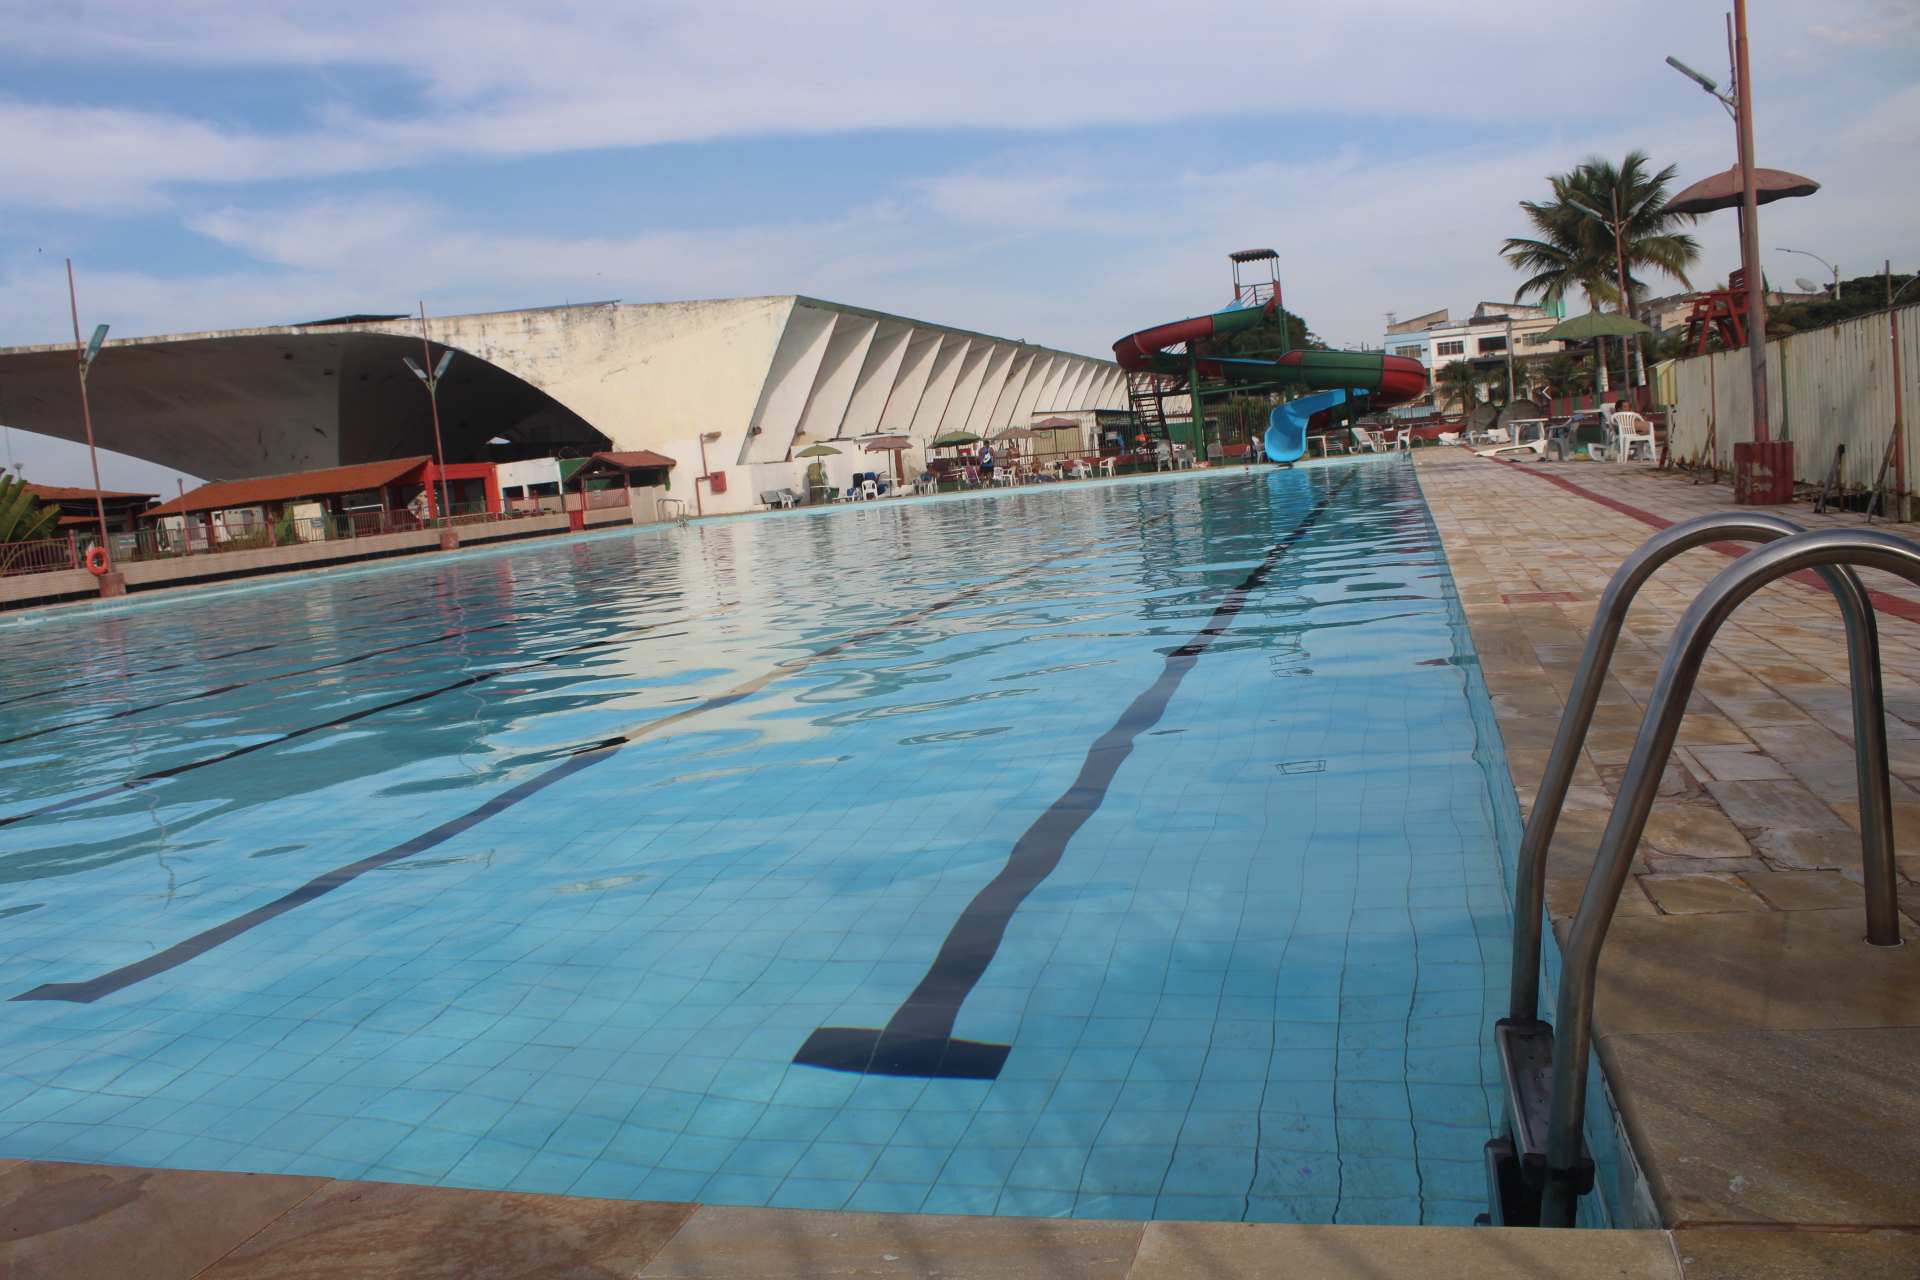 O Parque Aquático Rosano Orsini dispõe de piscina olímpica para o banho livre de terça-feira a domingo